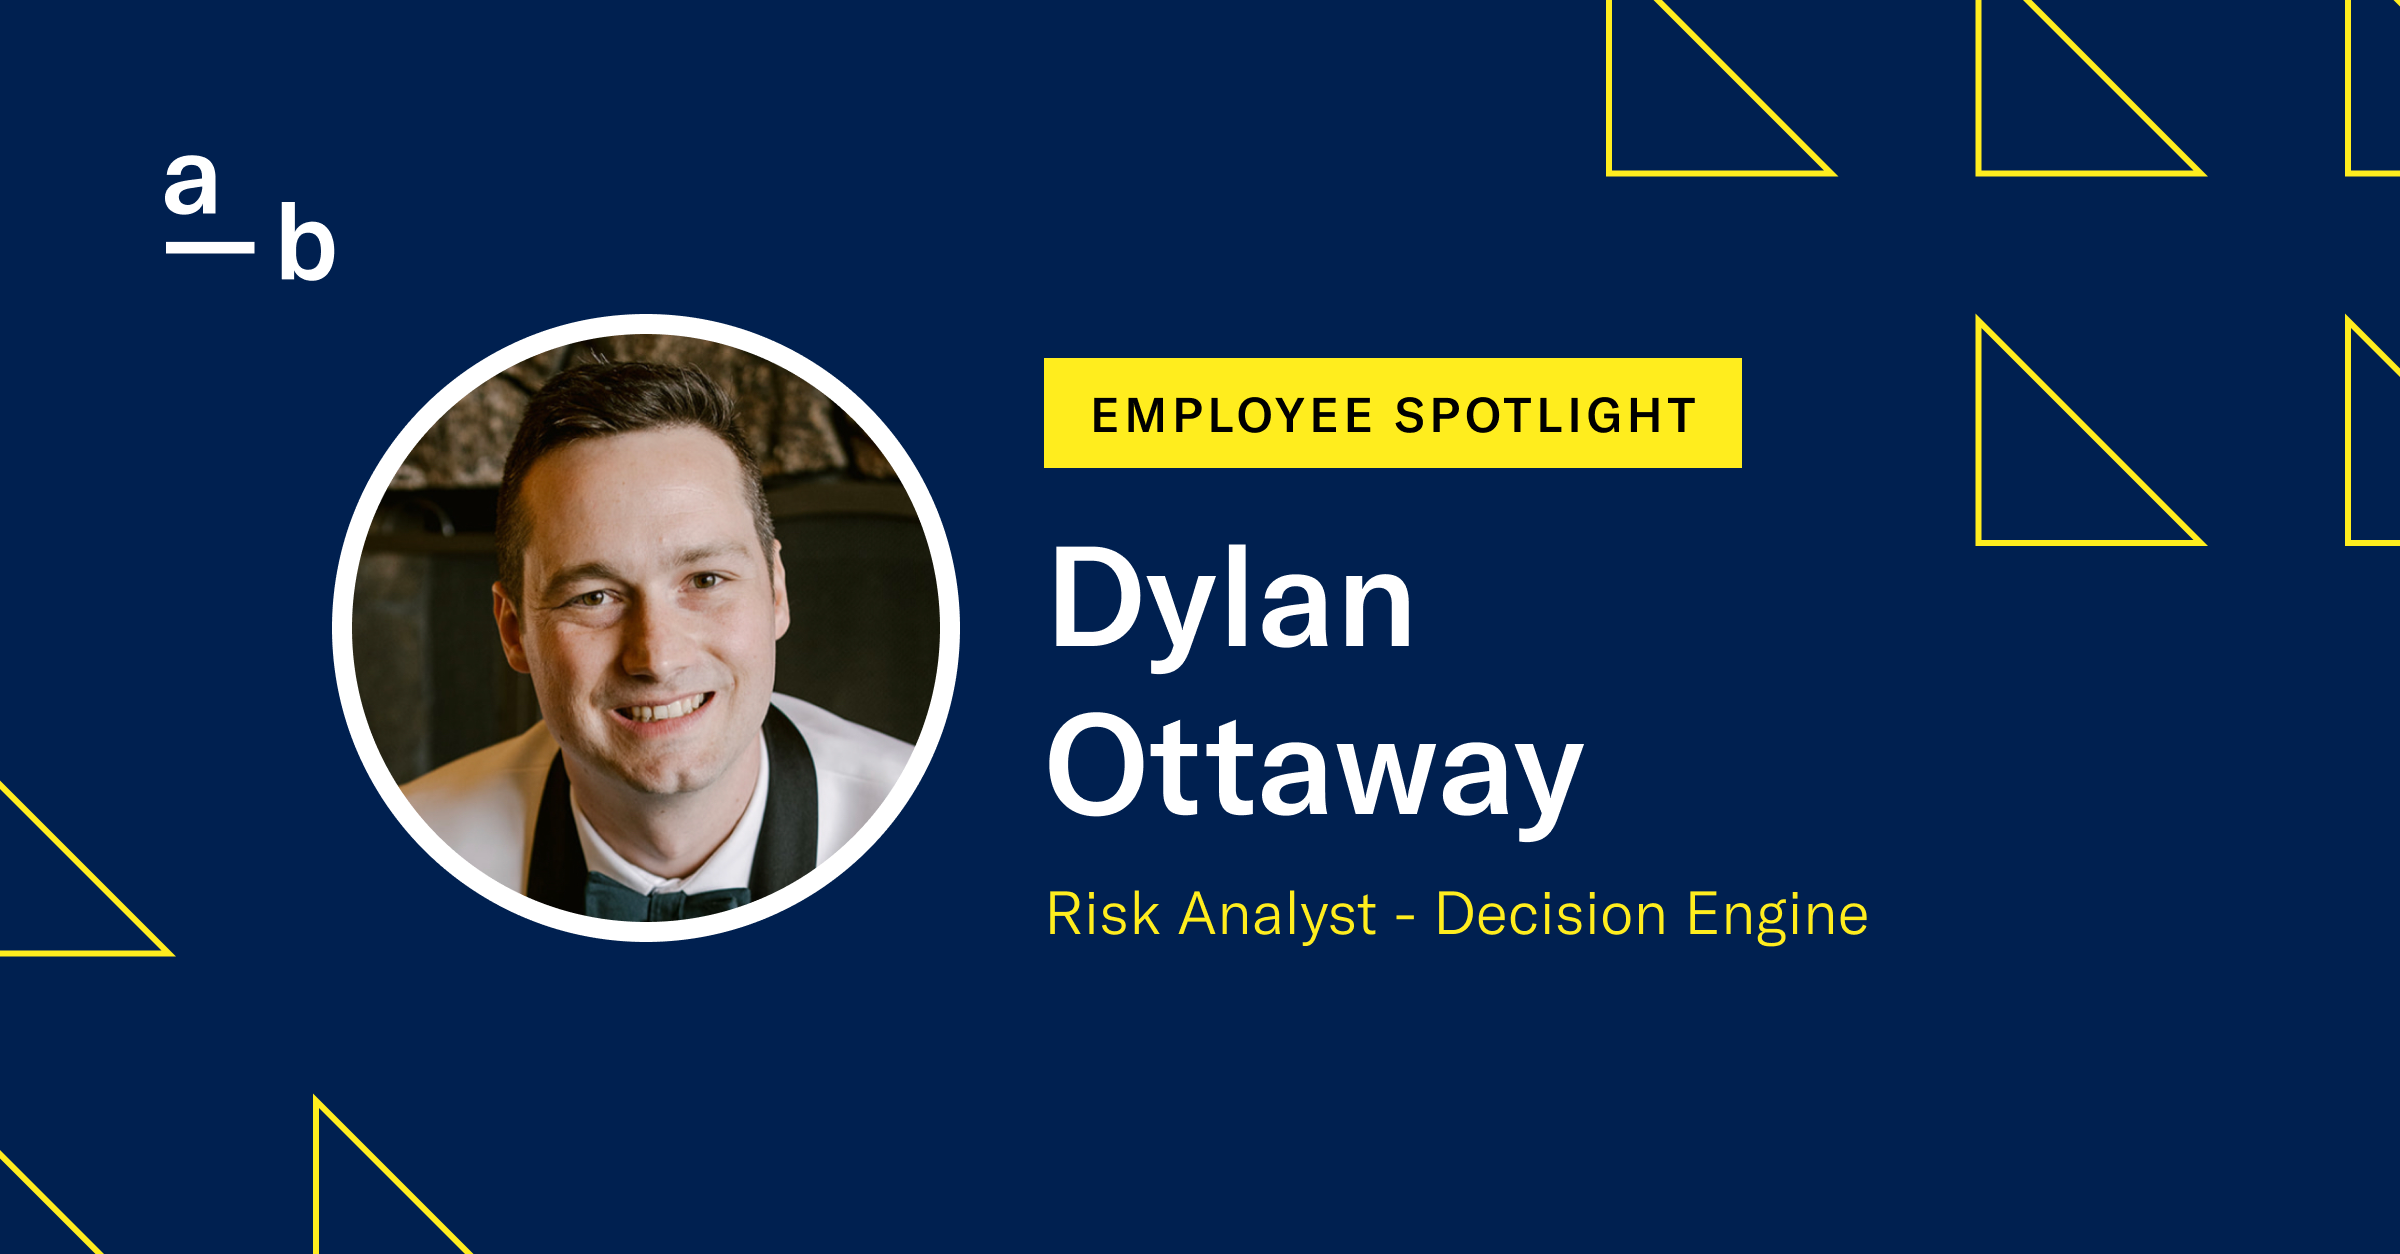 Meet Dylan Ottaway, Risk Analyst – Decision Engine